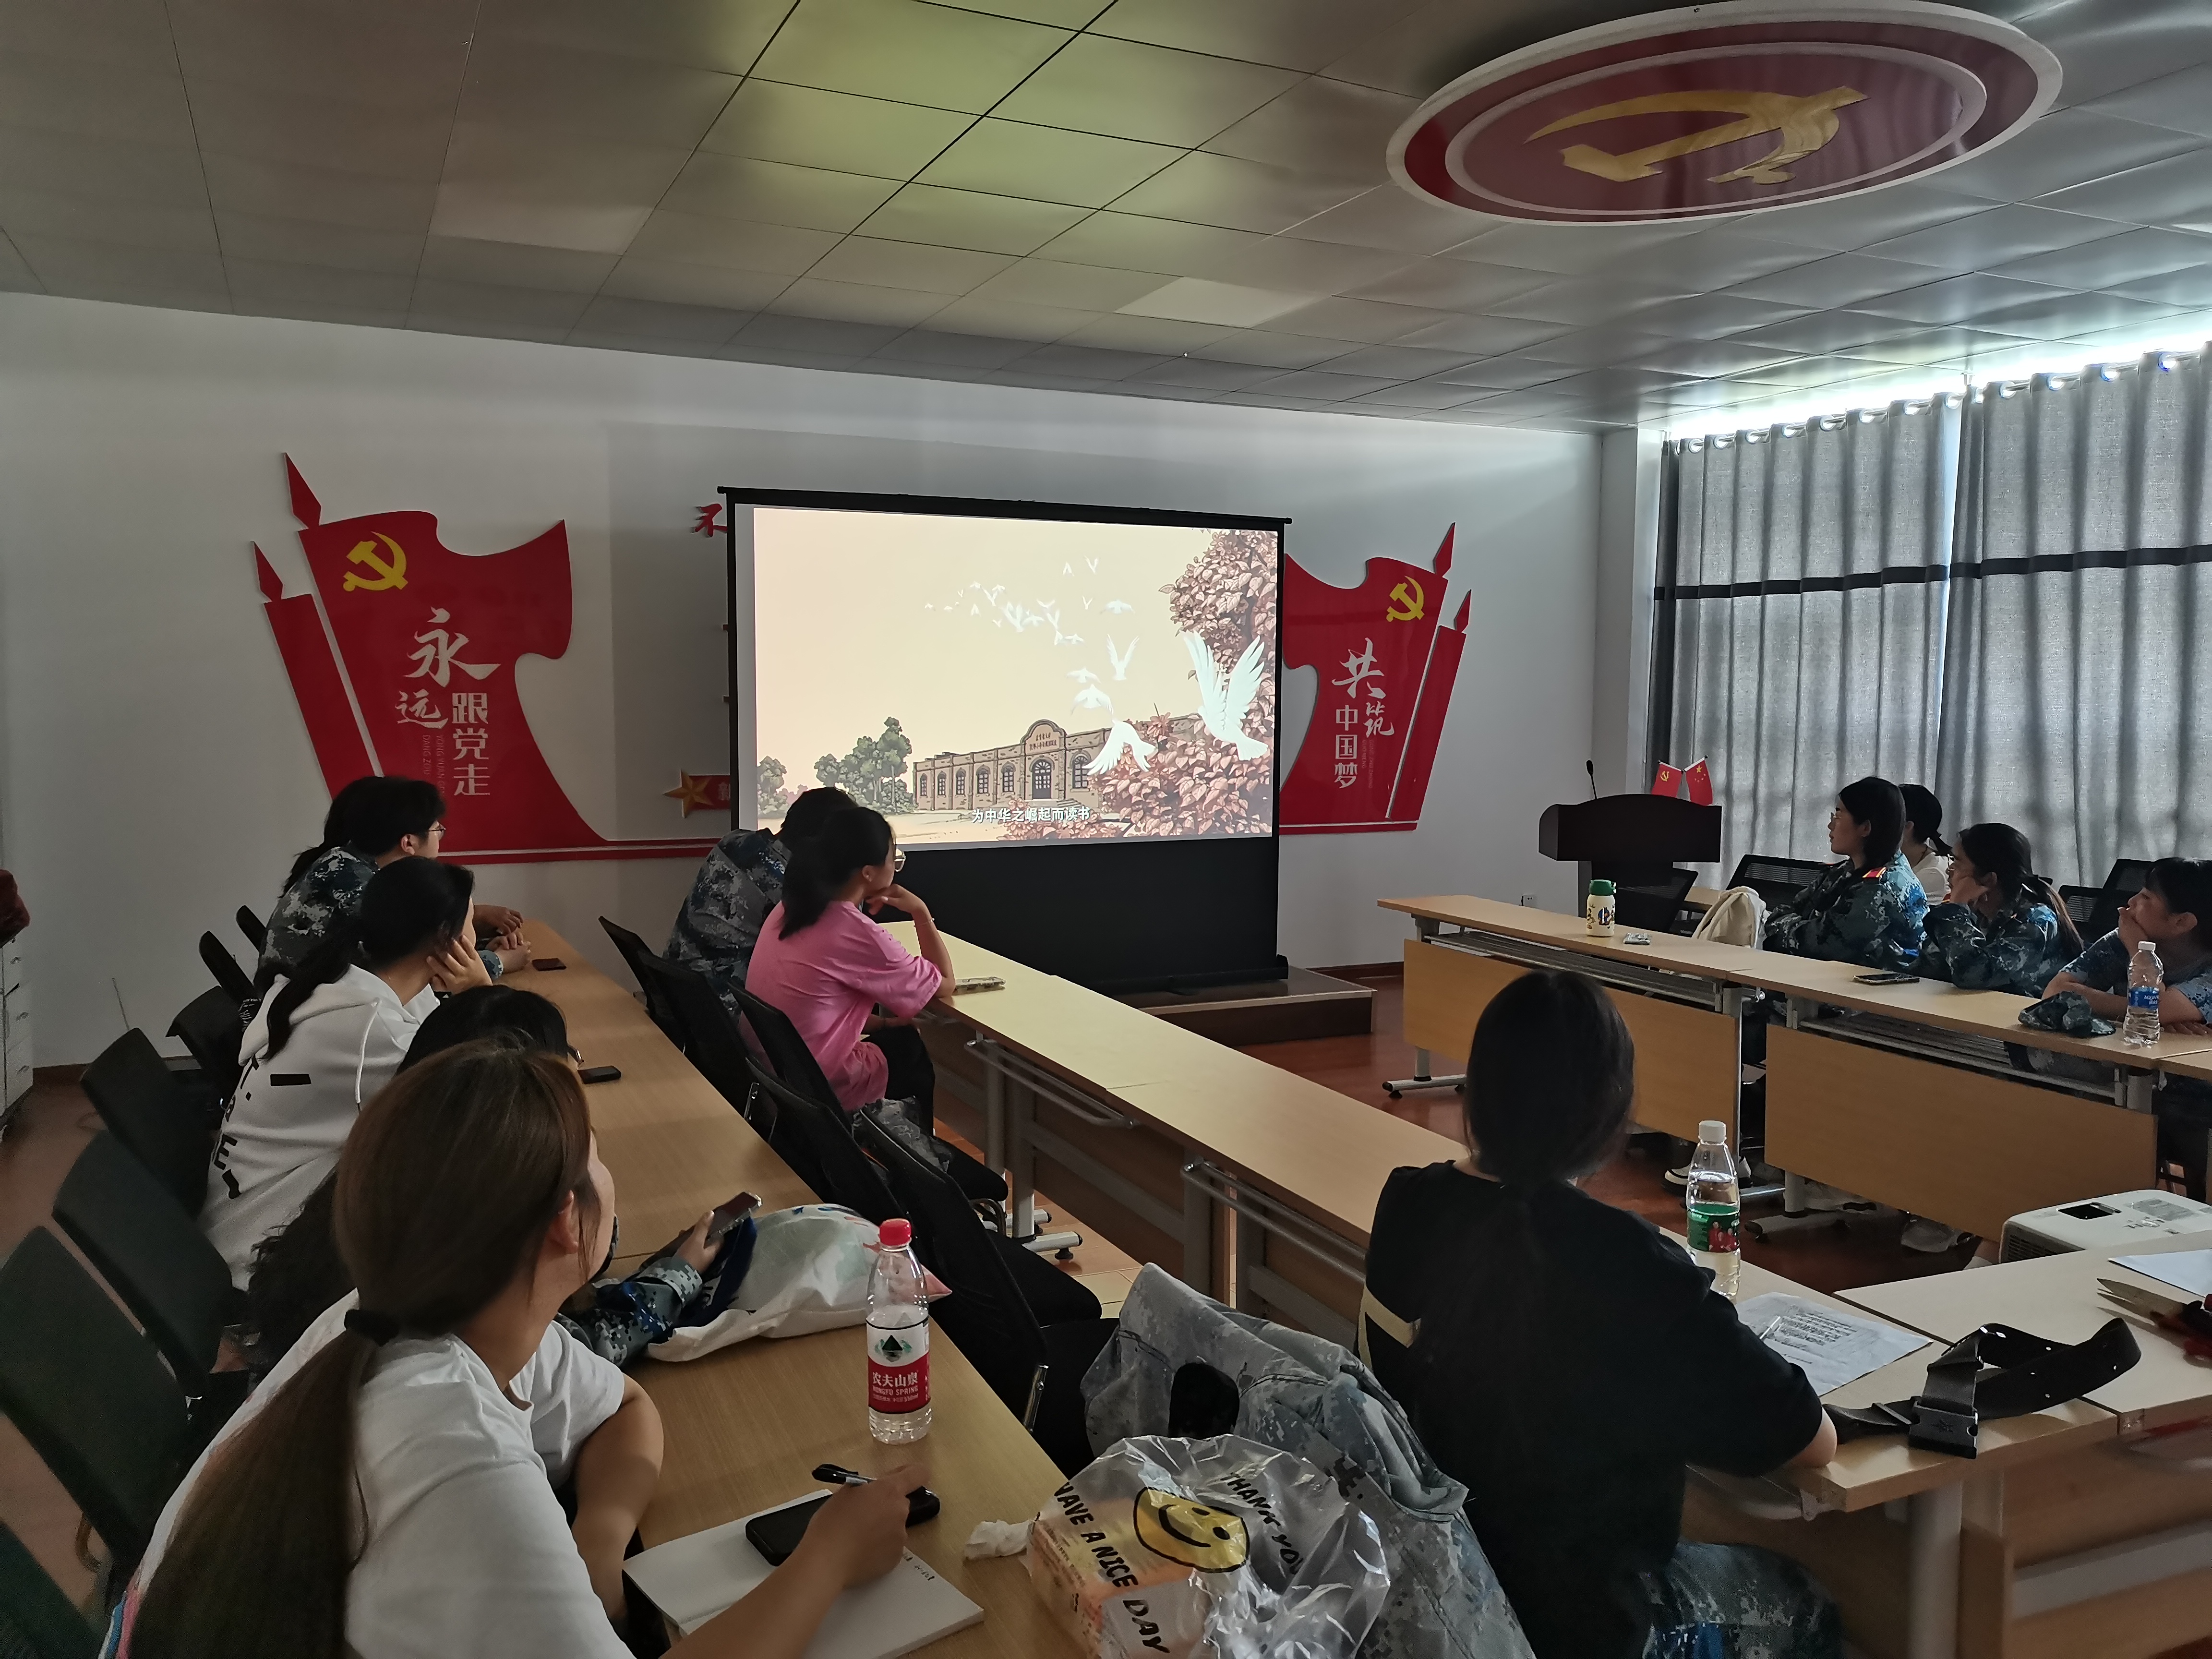 翔宇放映厅组织新生在军训期间观看上海美术电影制片厂制作的动画电影《大鸾——周恩来童年读书的故事》，讲述了周恩来童年读书的故事。